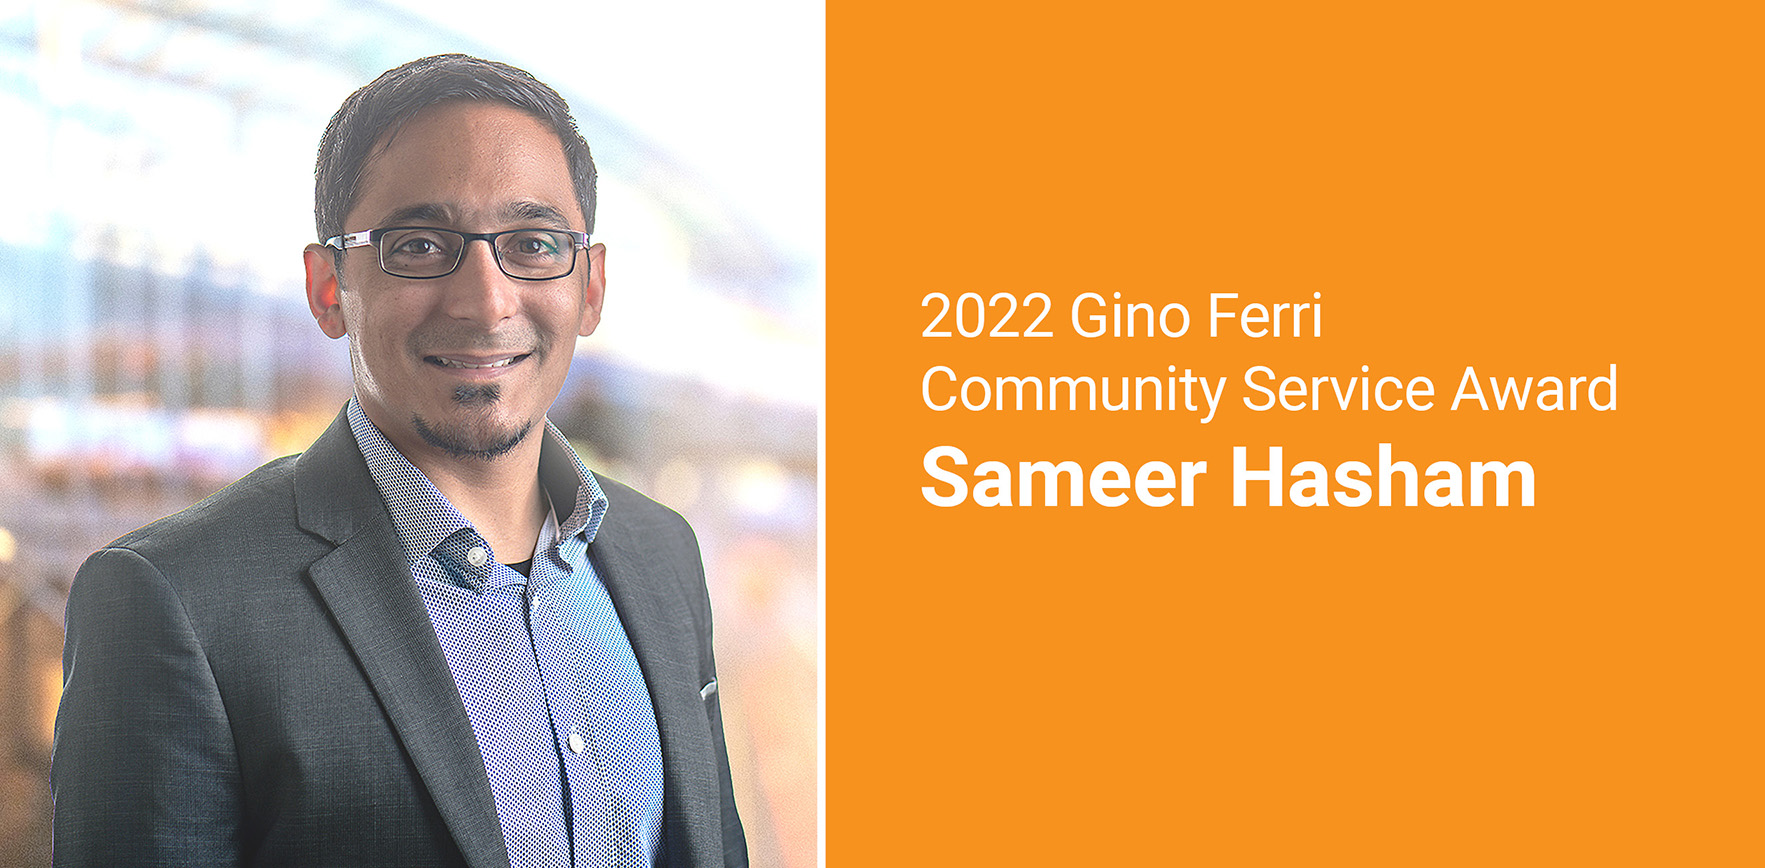 Gino Ferri Community Service Award Presented to Sameer Hasham